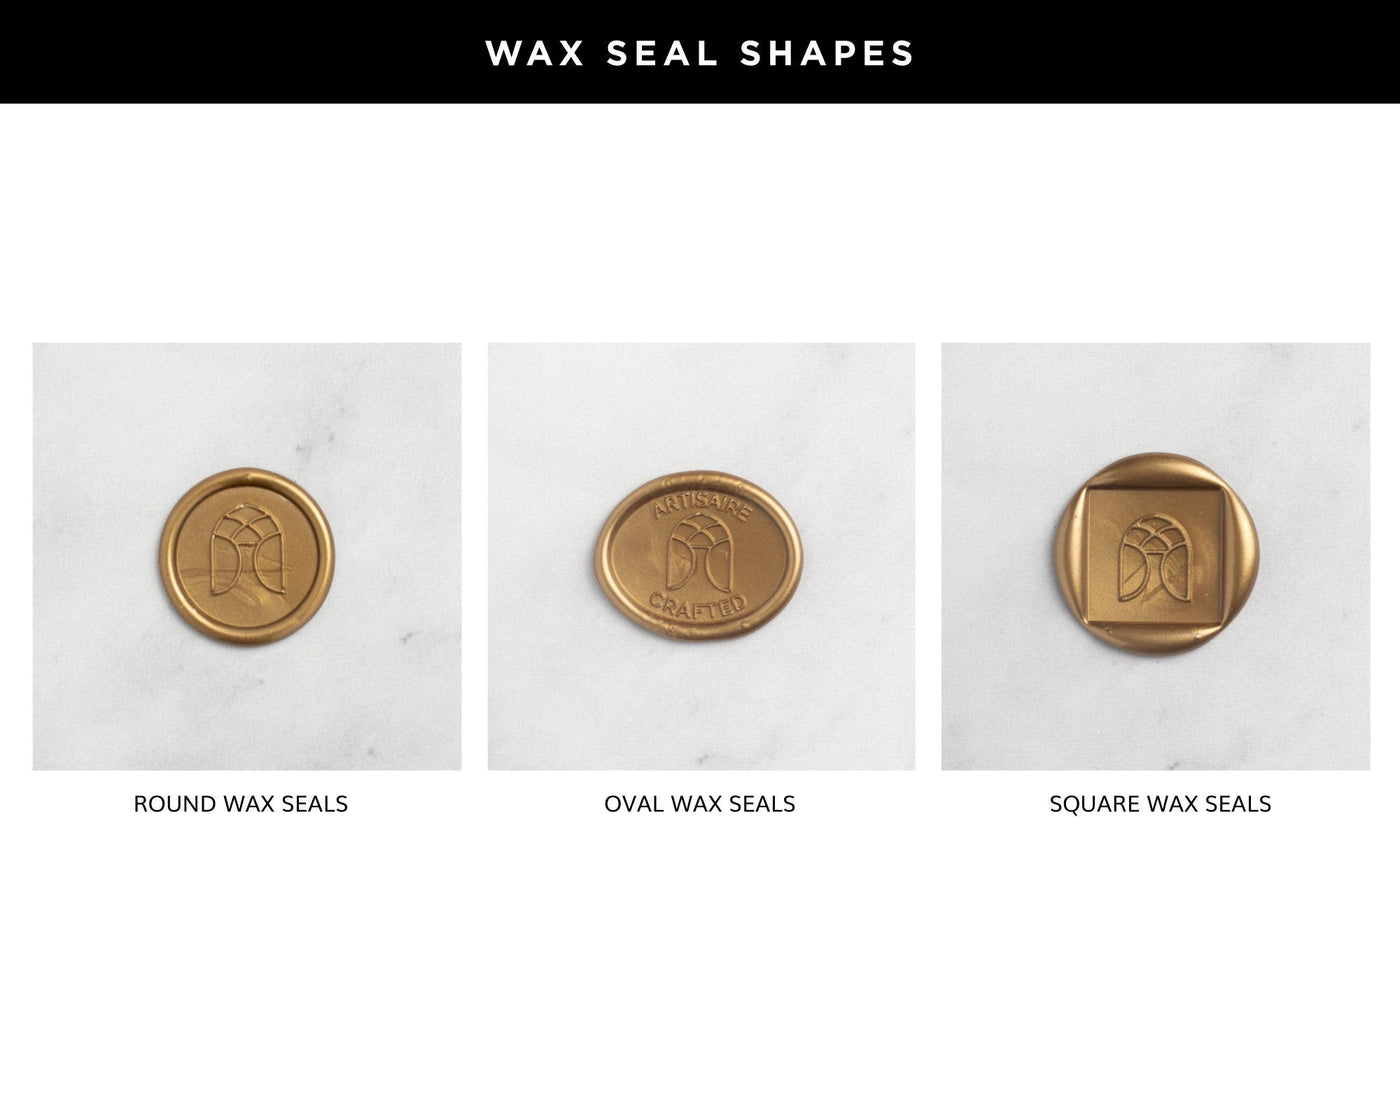 Custom Wax Seals – SipHipHooray